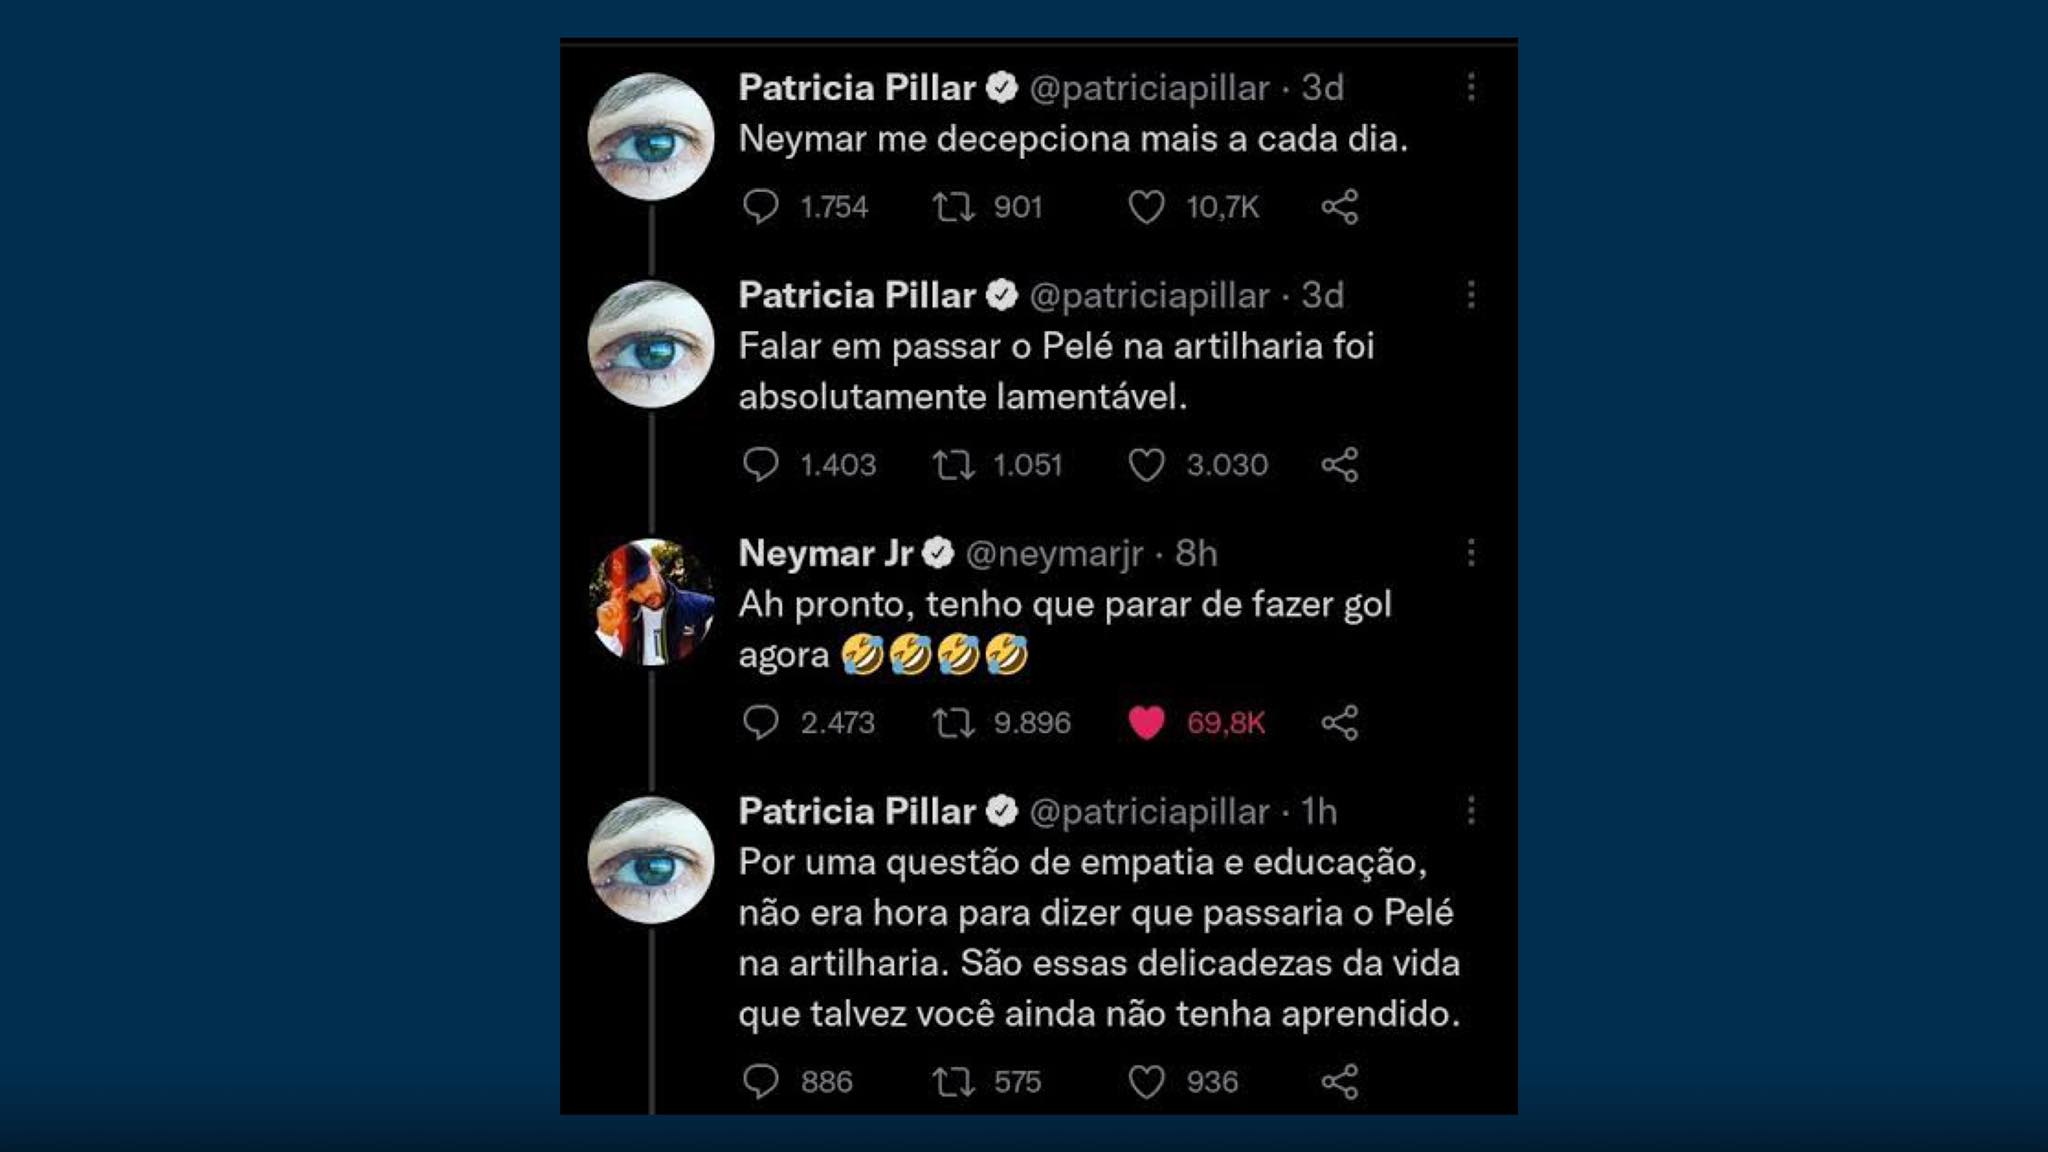 Neymar, Patrícia Pillar